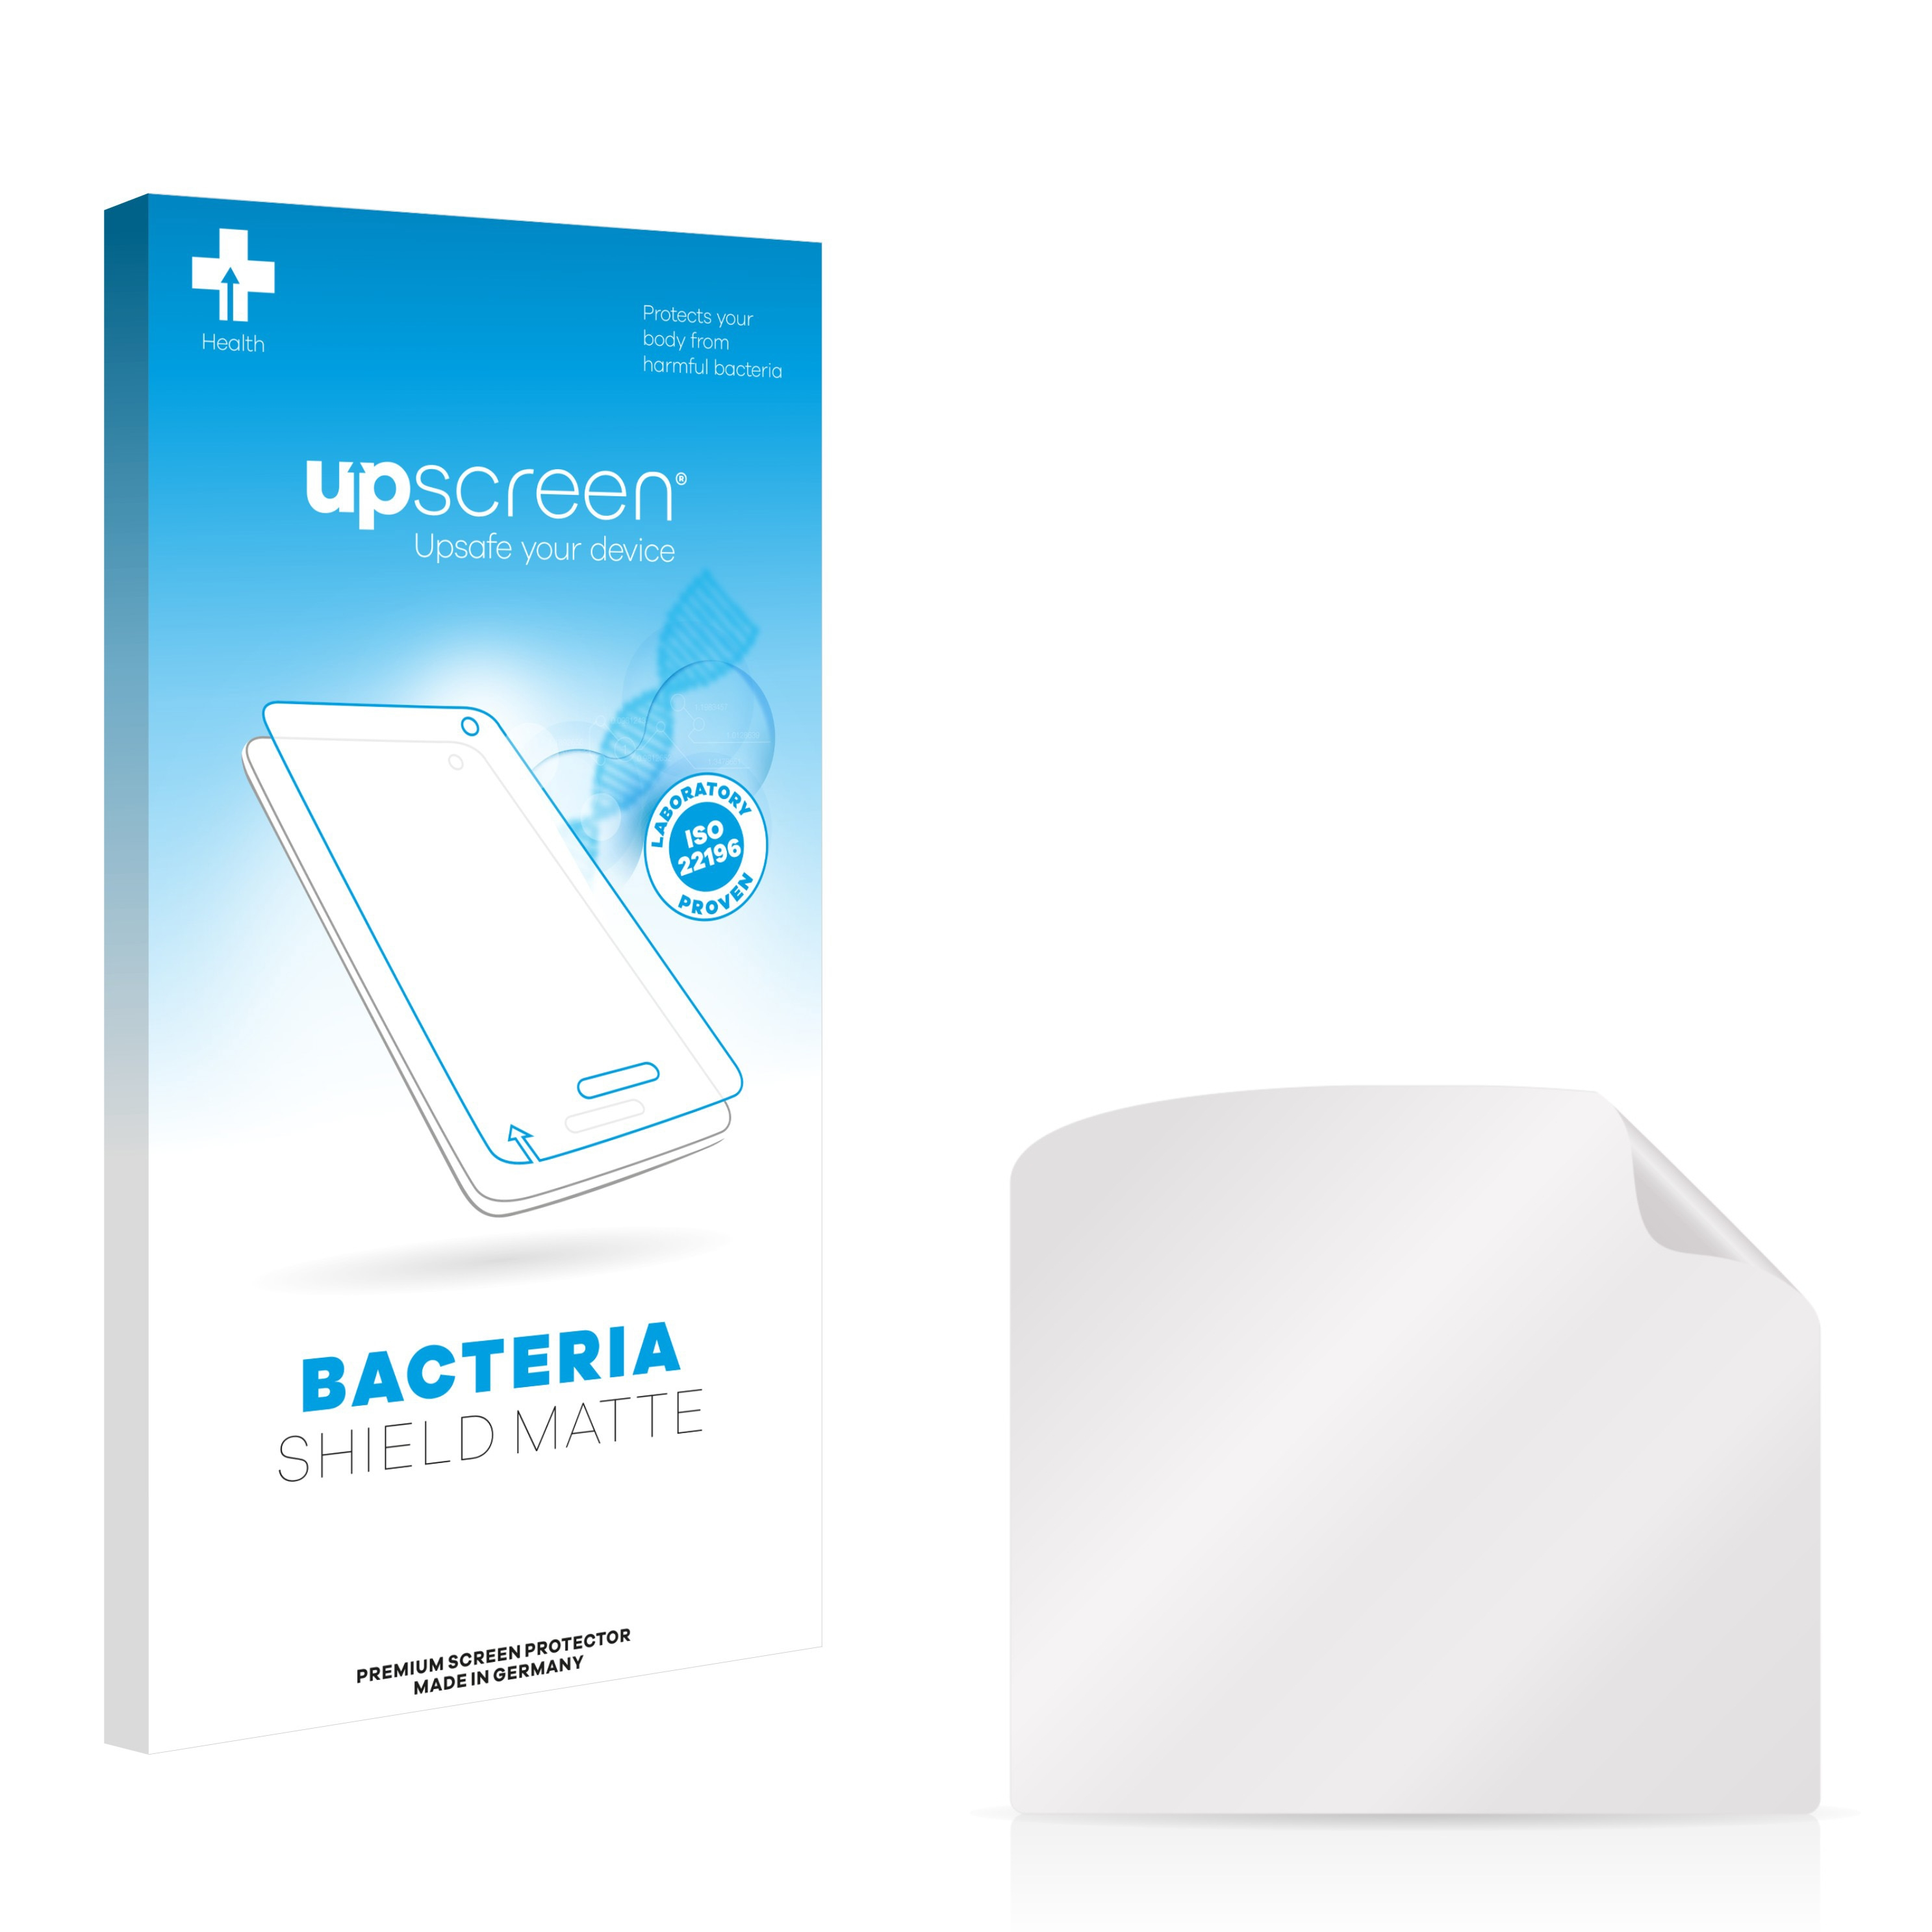 UPSCREEN antibakteriell entspiegelt matte Motorola Talkabout Schutzfolie(für T82)